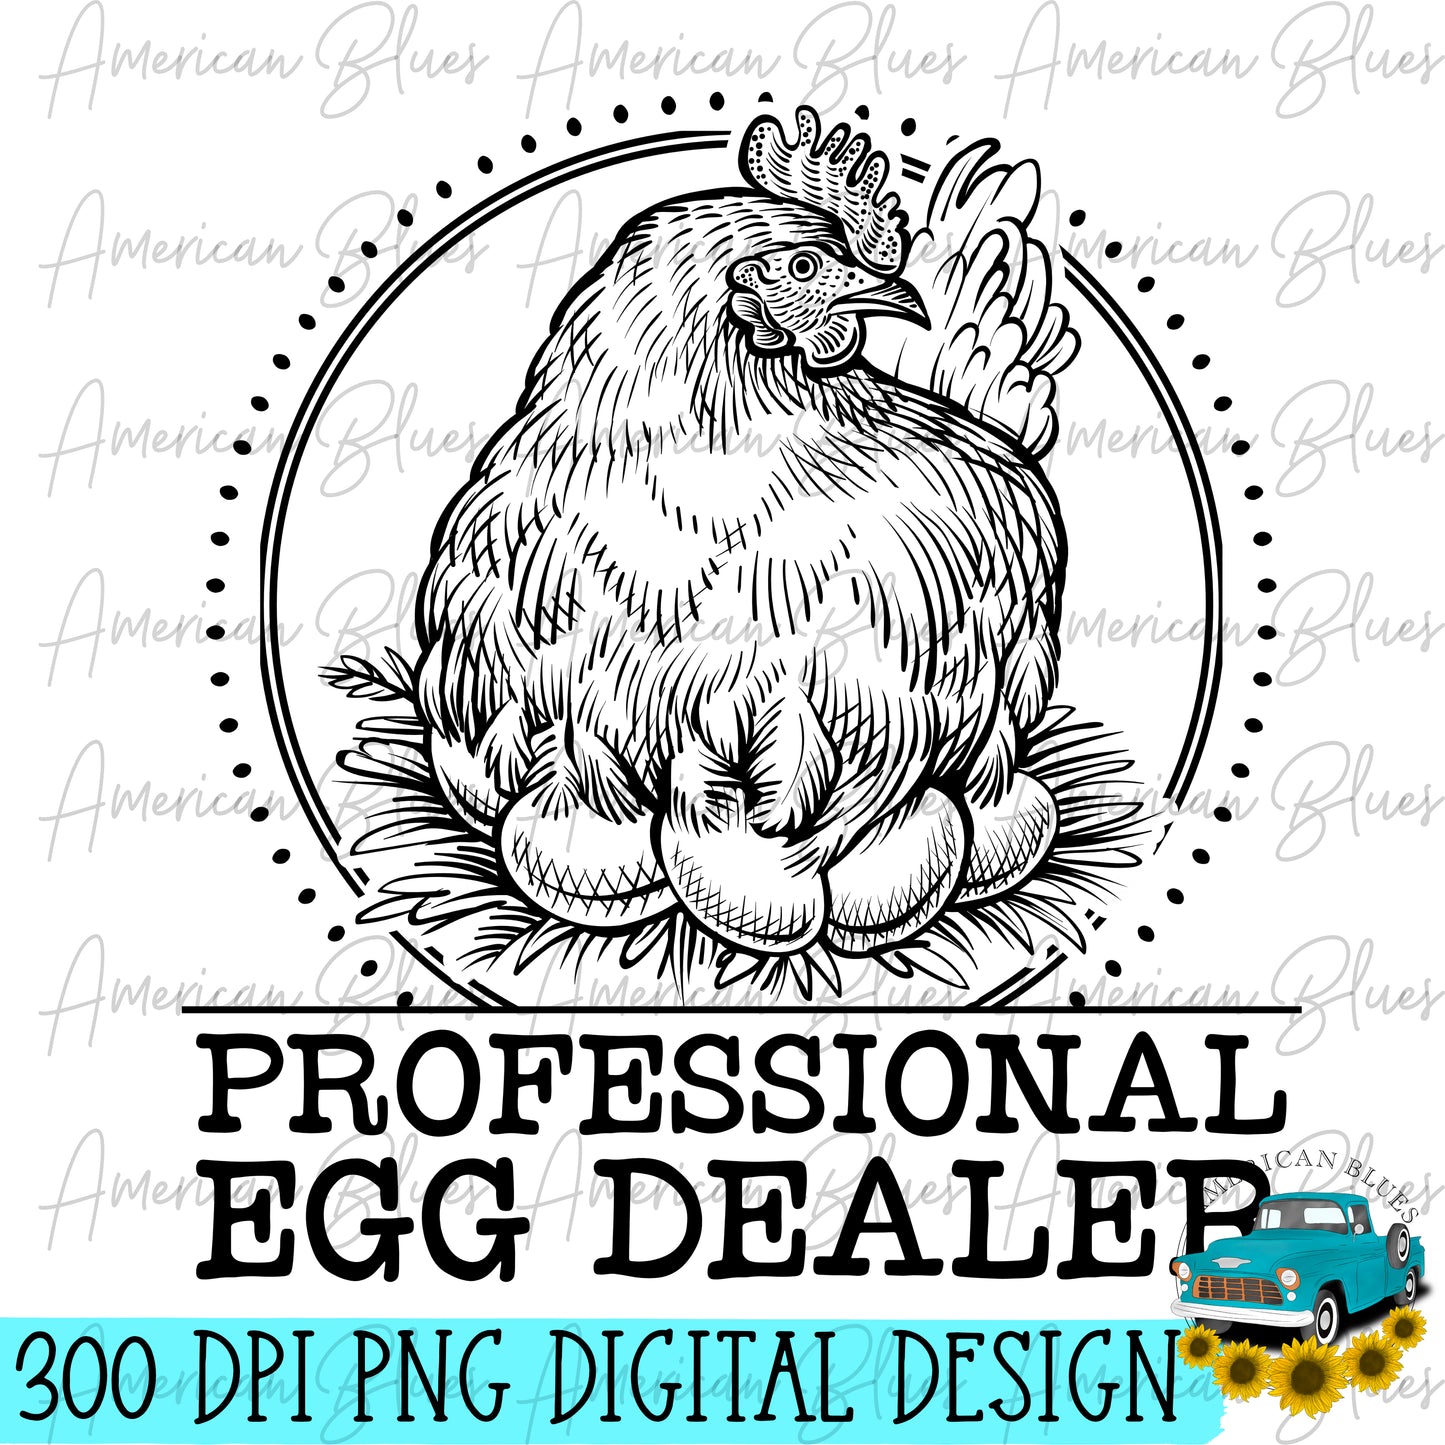 Professional Egg Dealer 2- single color hen black & white version included